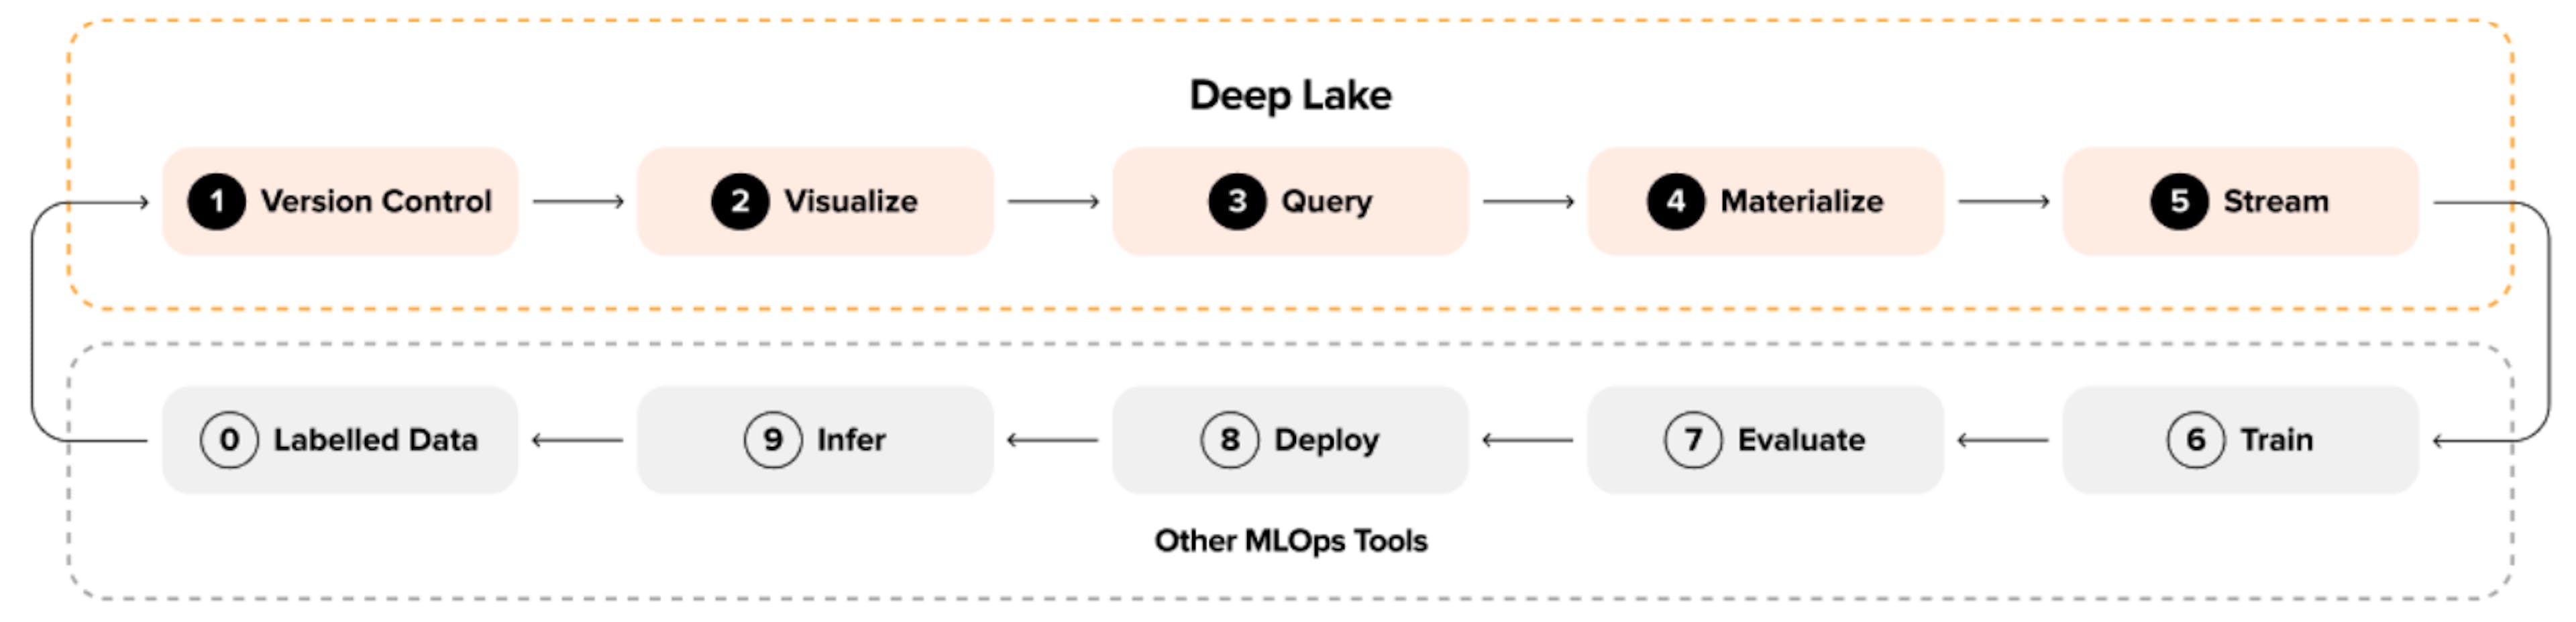 Hình 2: Vòng lặp Machine Learning với Deep Lake